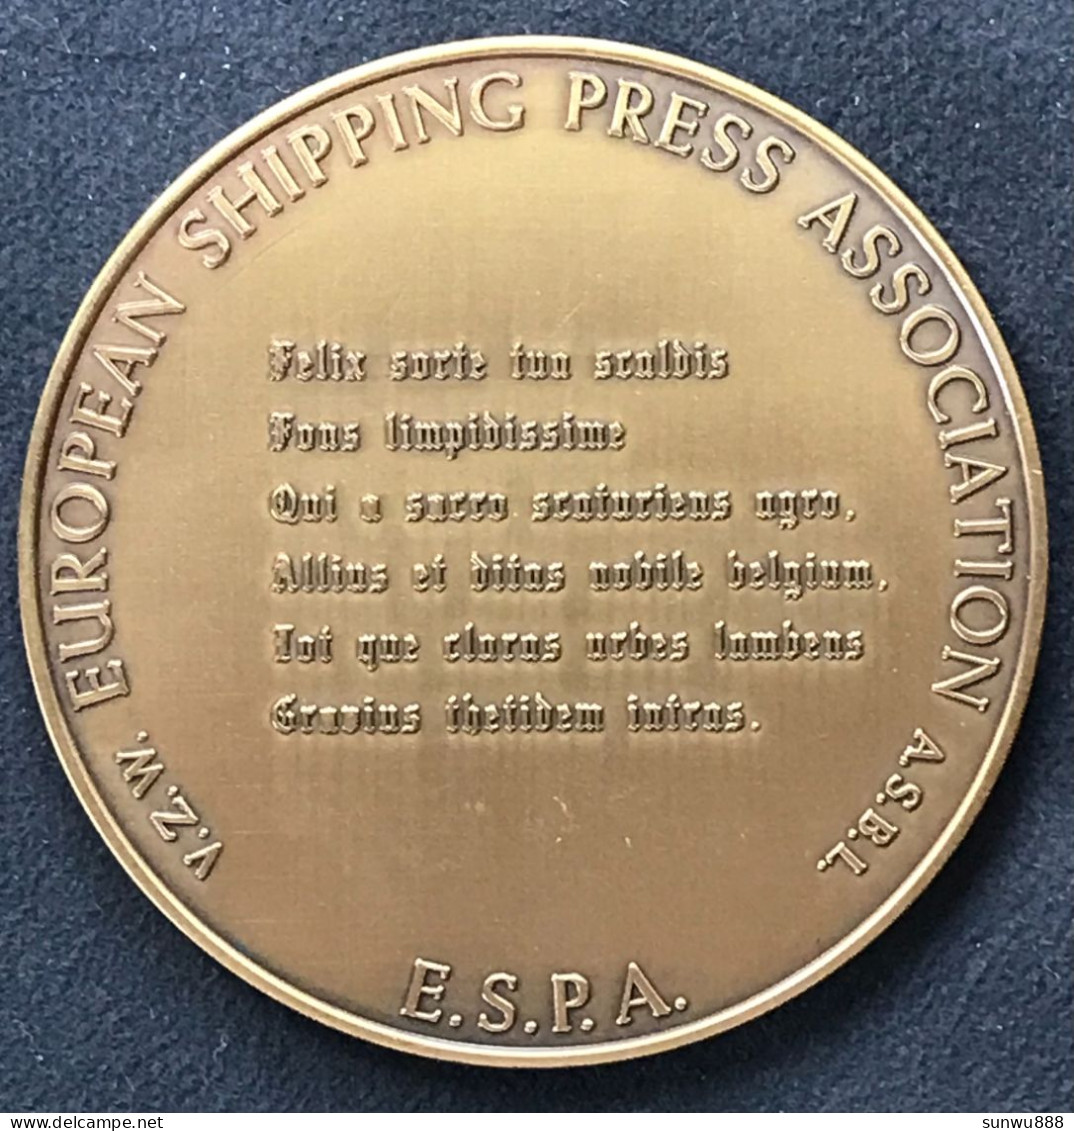 Superbe Médaille Revivat Scaldis Gouy - Le Catelet - Escaut Jan Keustermans - Shipping Press Association - Altri & Non Classificati